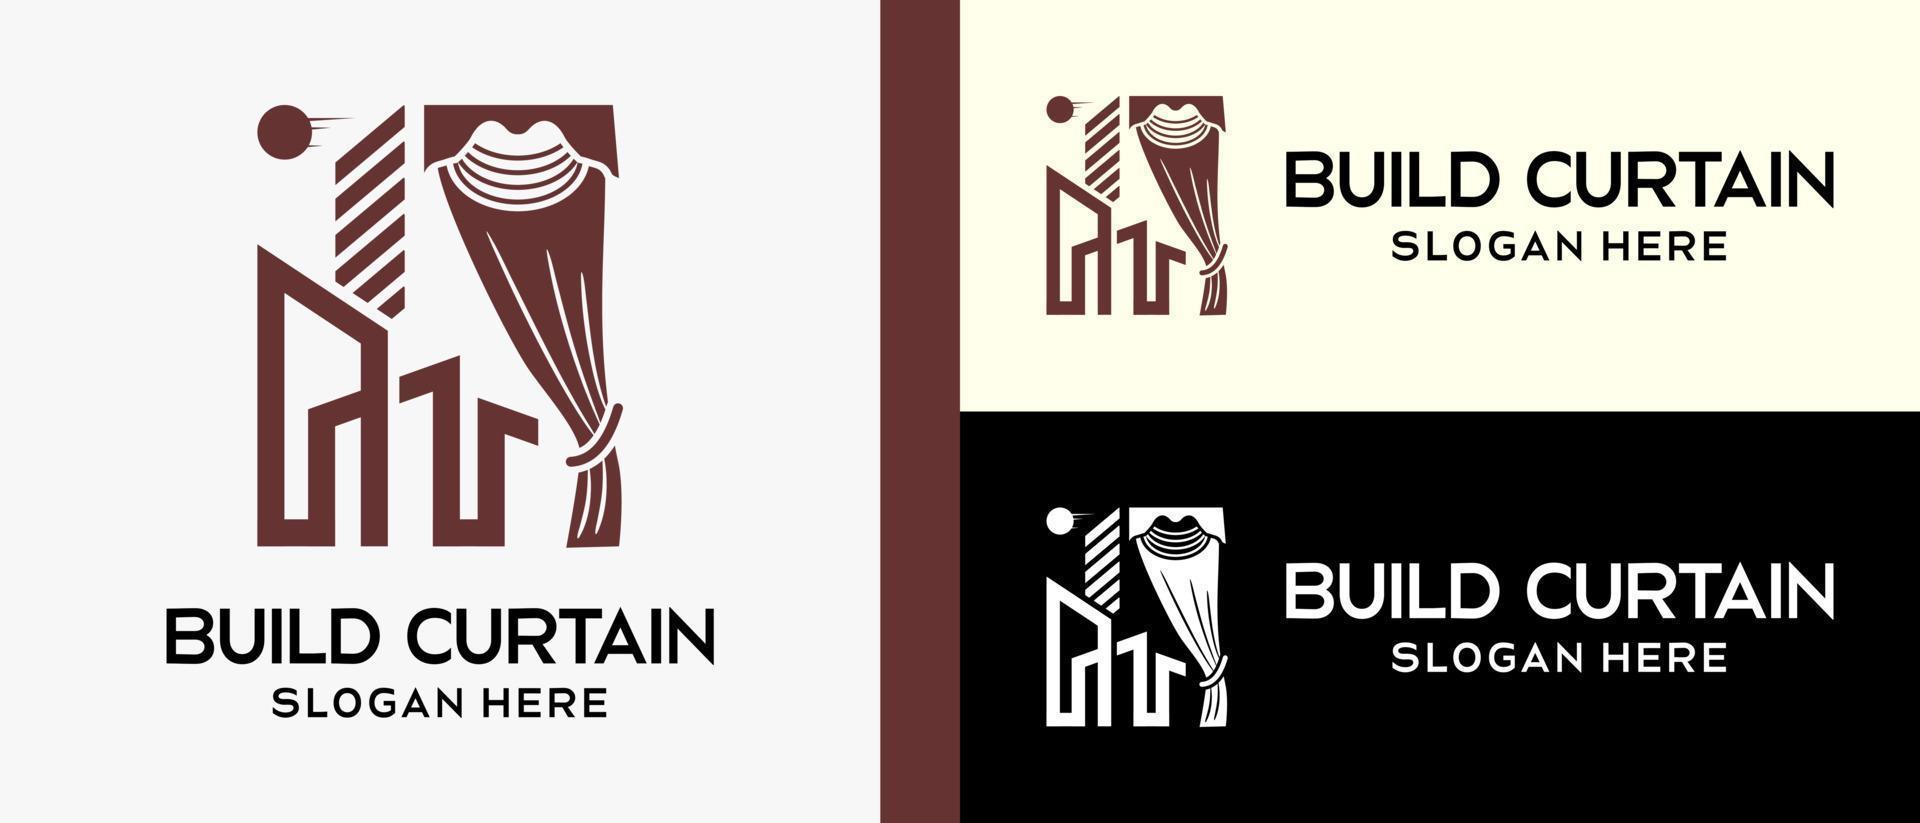 plantilla de diseño de logotipo de cortina con silueta y construcción en estilo de línea de lujo. ilustración de logotipo de vector creativo.